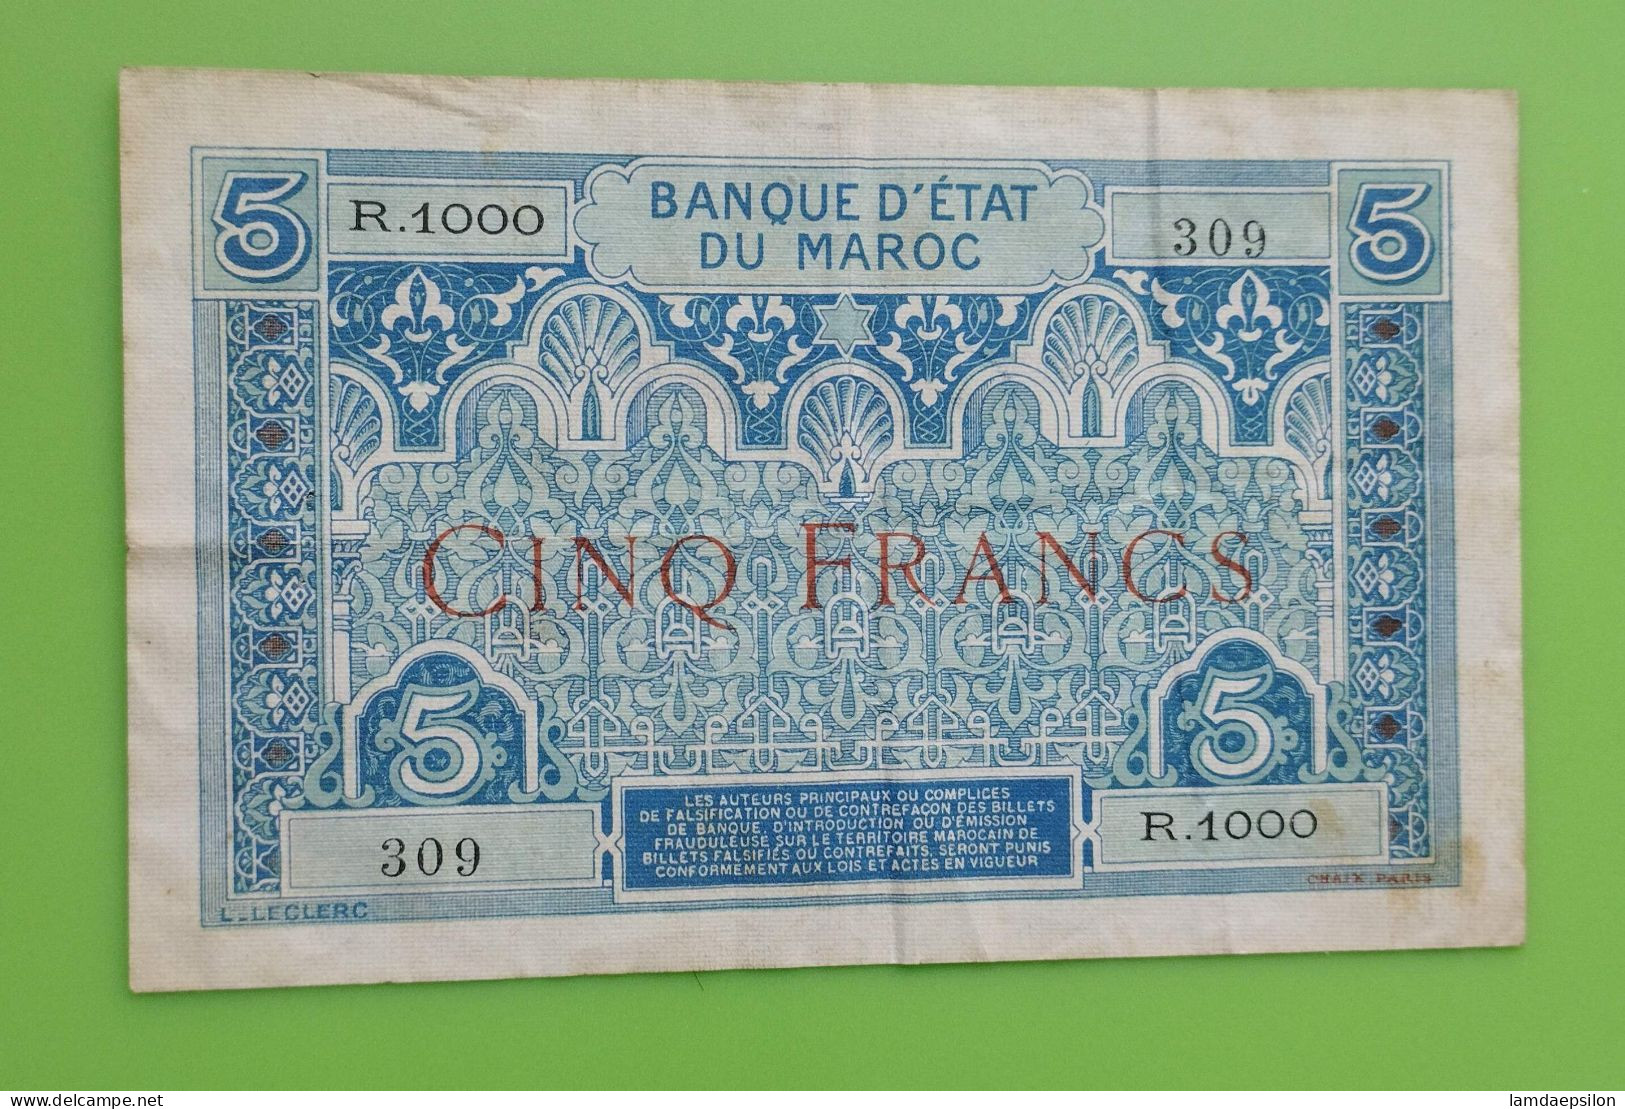 MAROC MOROCCO MARRUECOS MAROKKO BANQUE D'ETAT 5 FRANC 1924 RARE SIGNATURE - Marokko